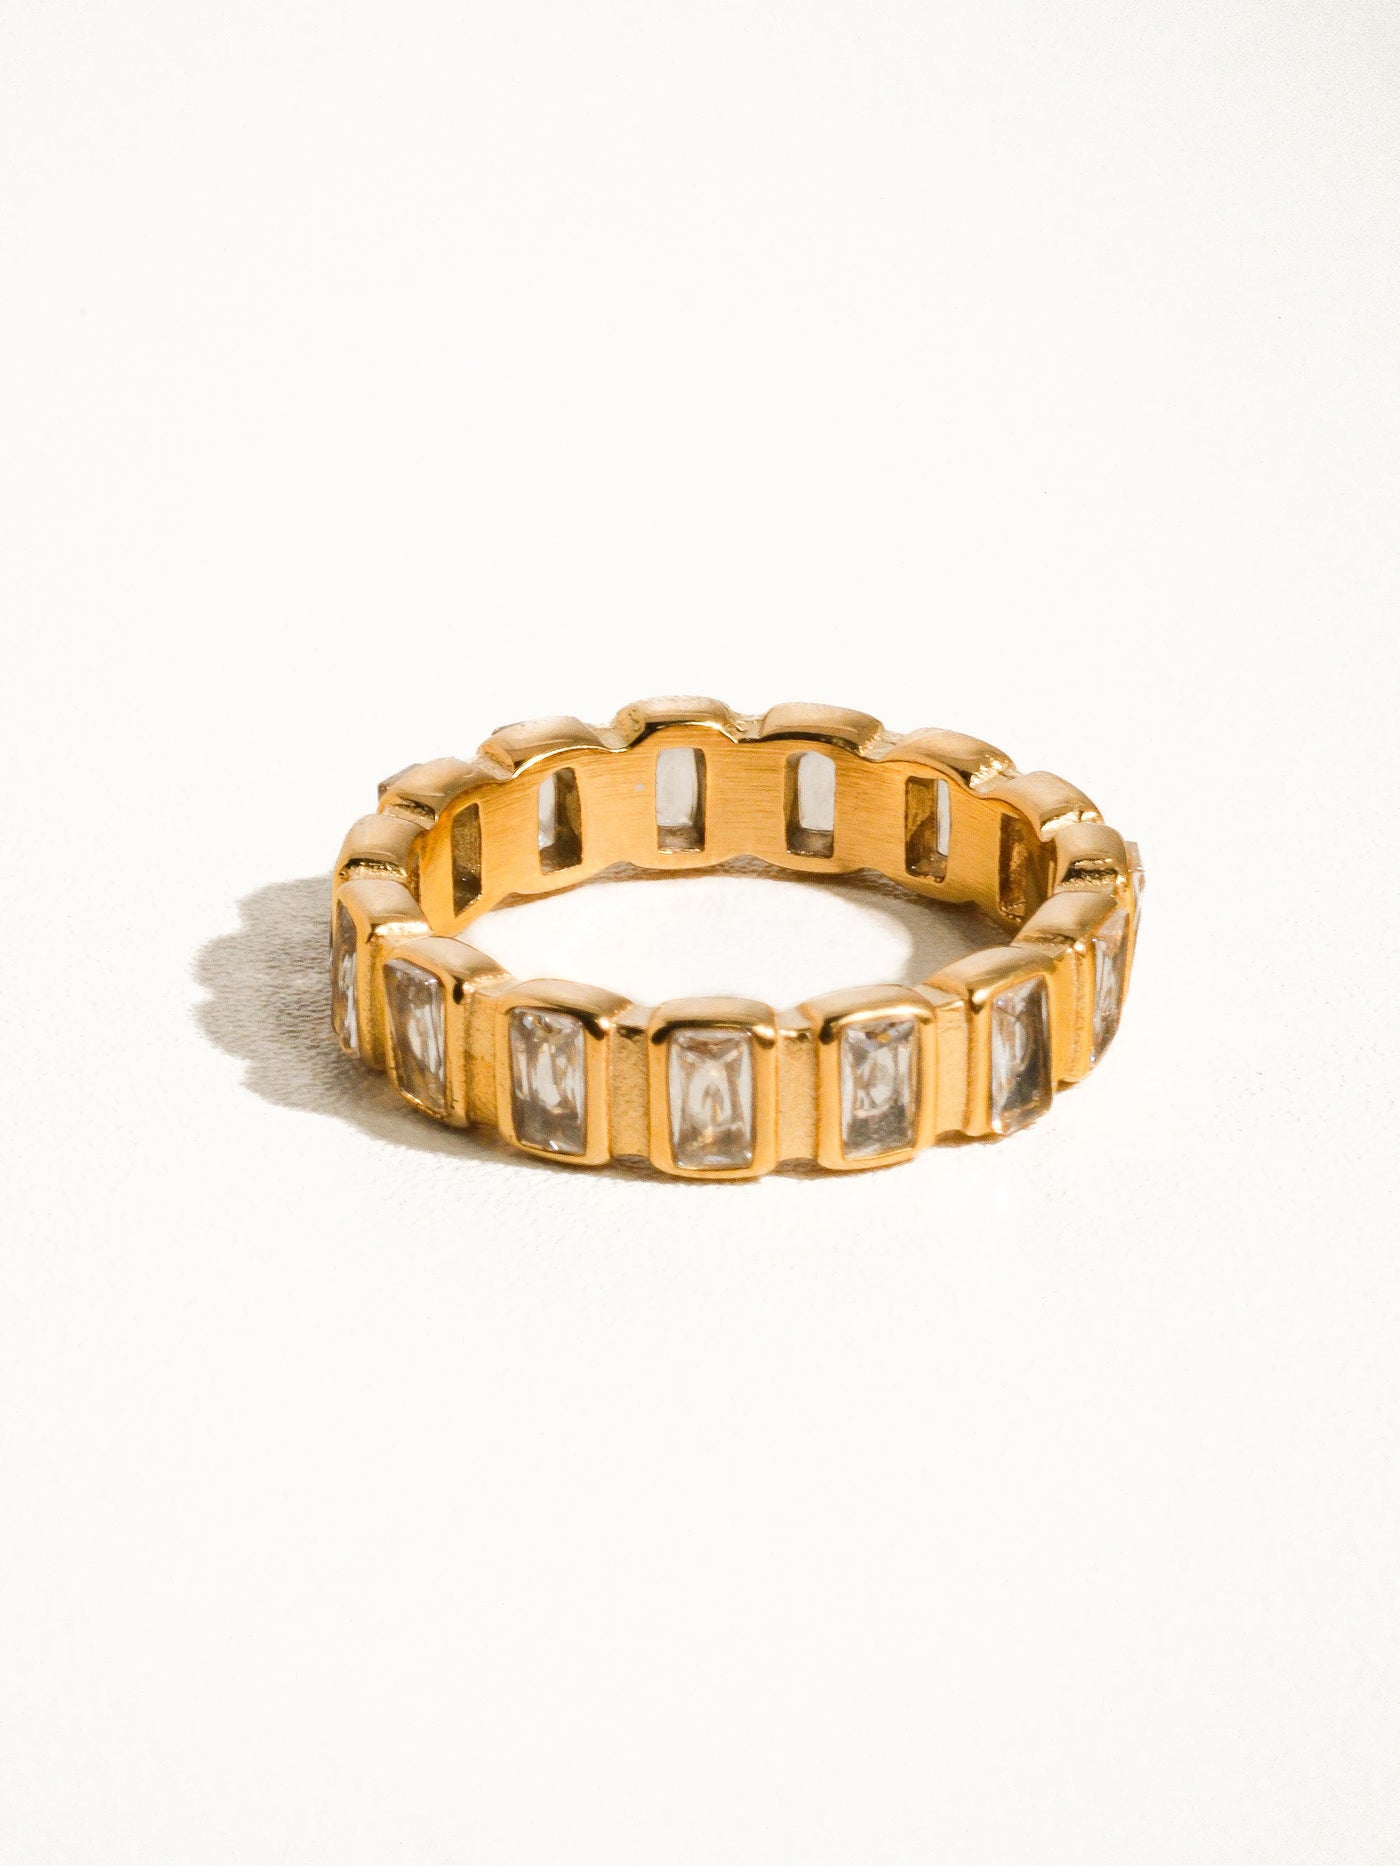 Sterling Non-Tarnish Gold Rhinestone Ring